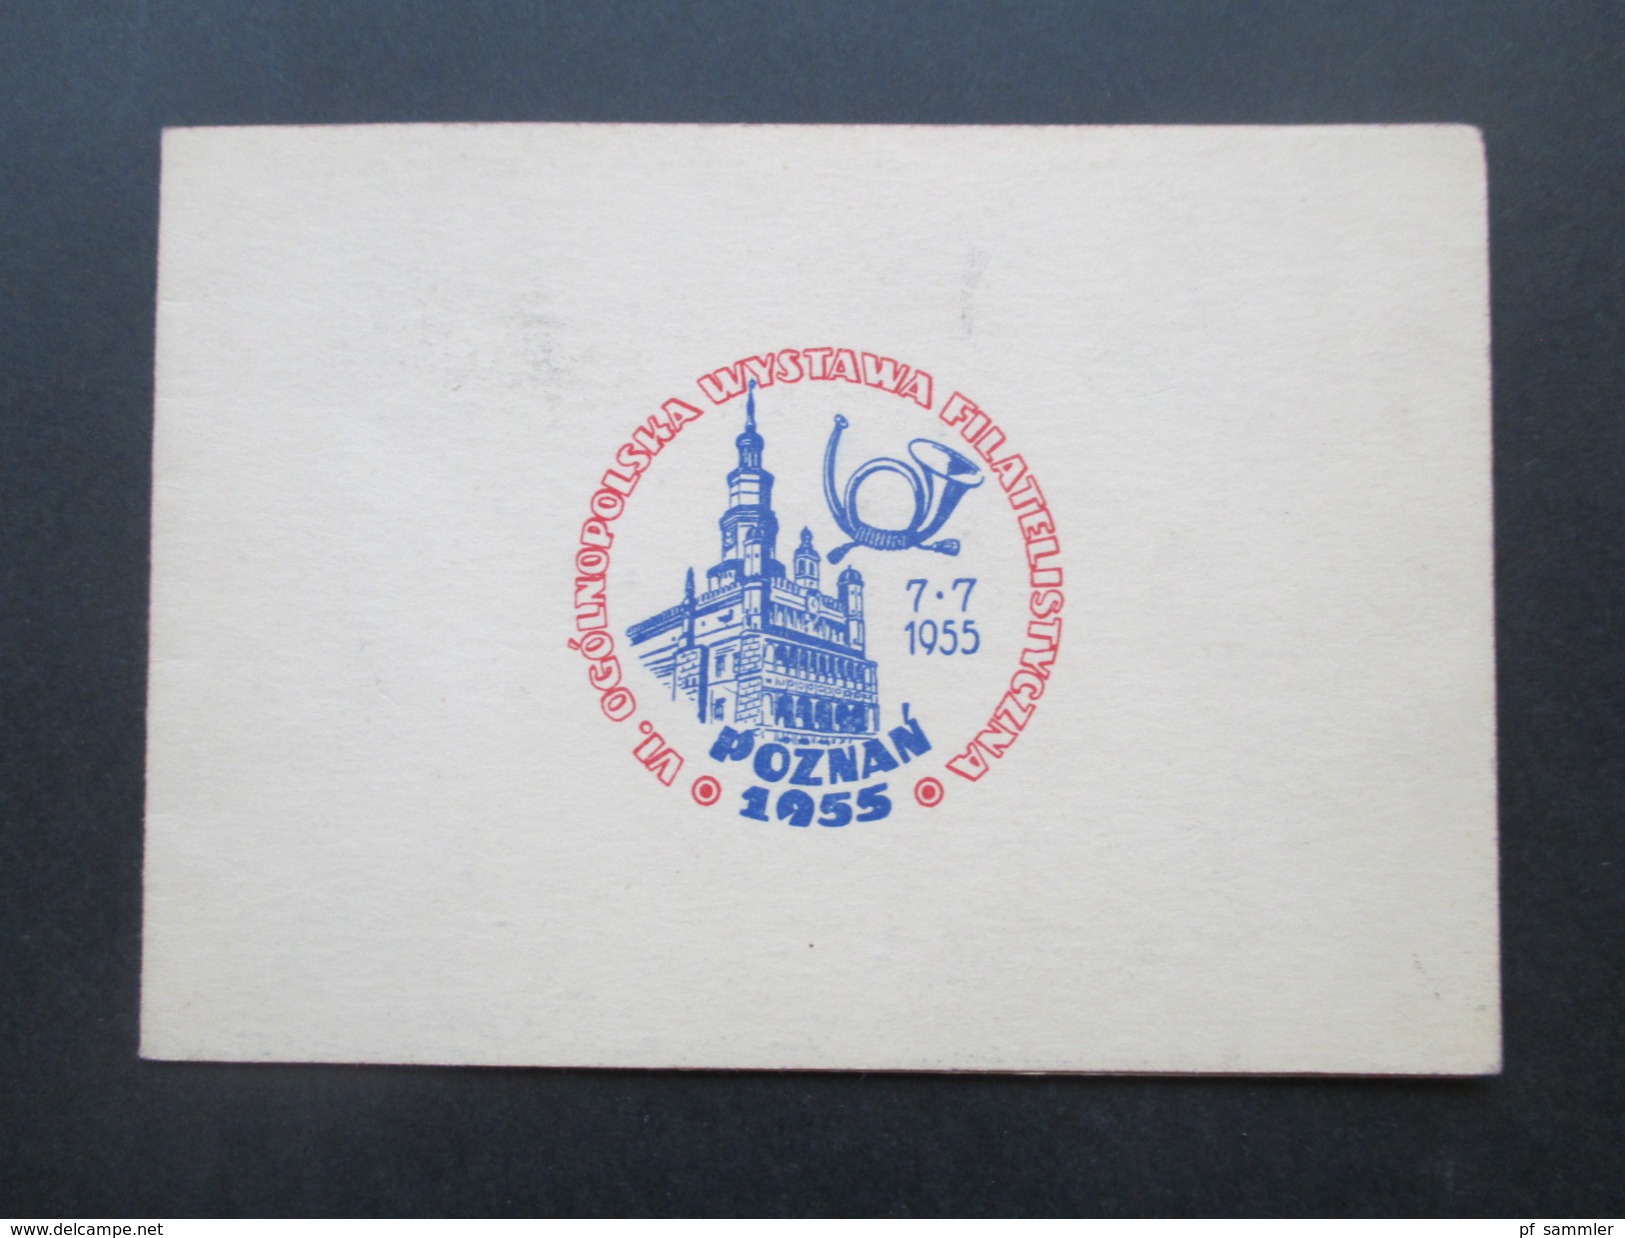 Polen 1955 Klappkarte Block 15 / 16 Sonderkarte VI. Ogolnopolska Wystawa Filatelistyczna. BM Ausstellung Posen - Covers & Documents